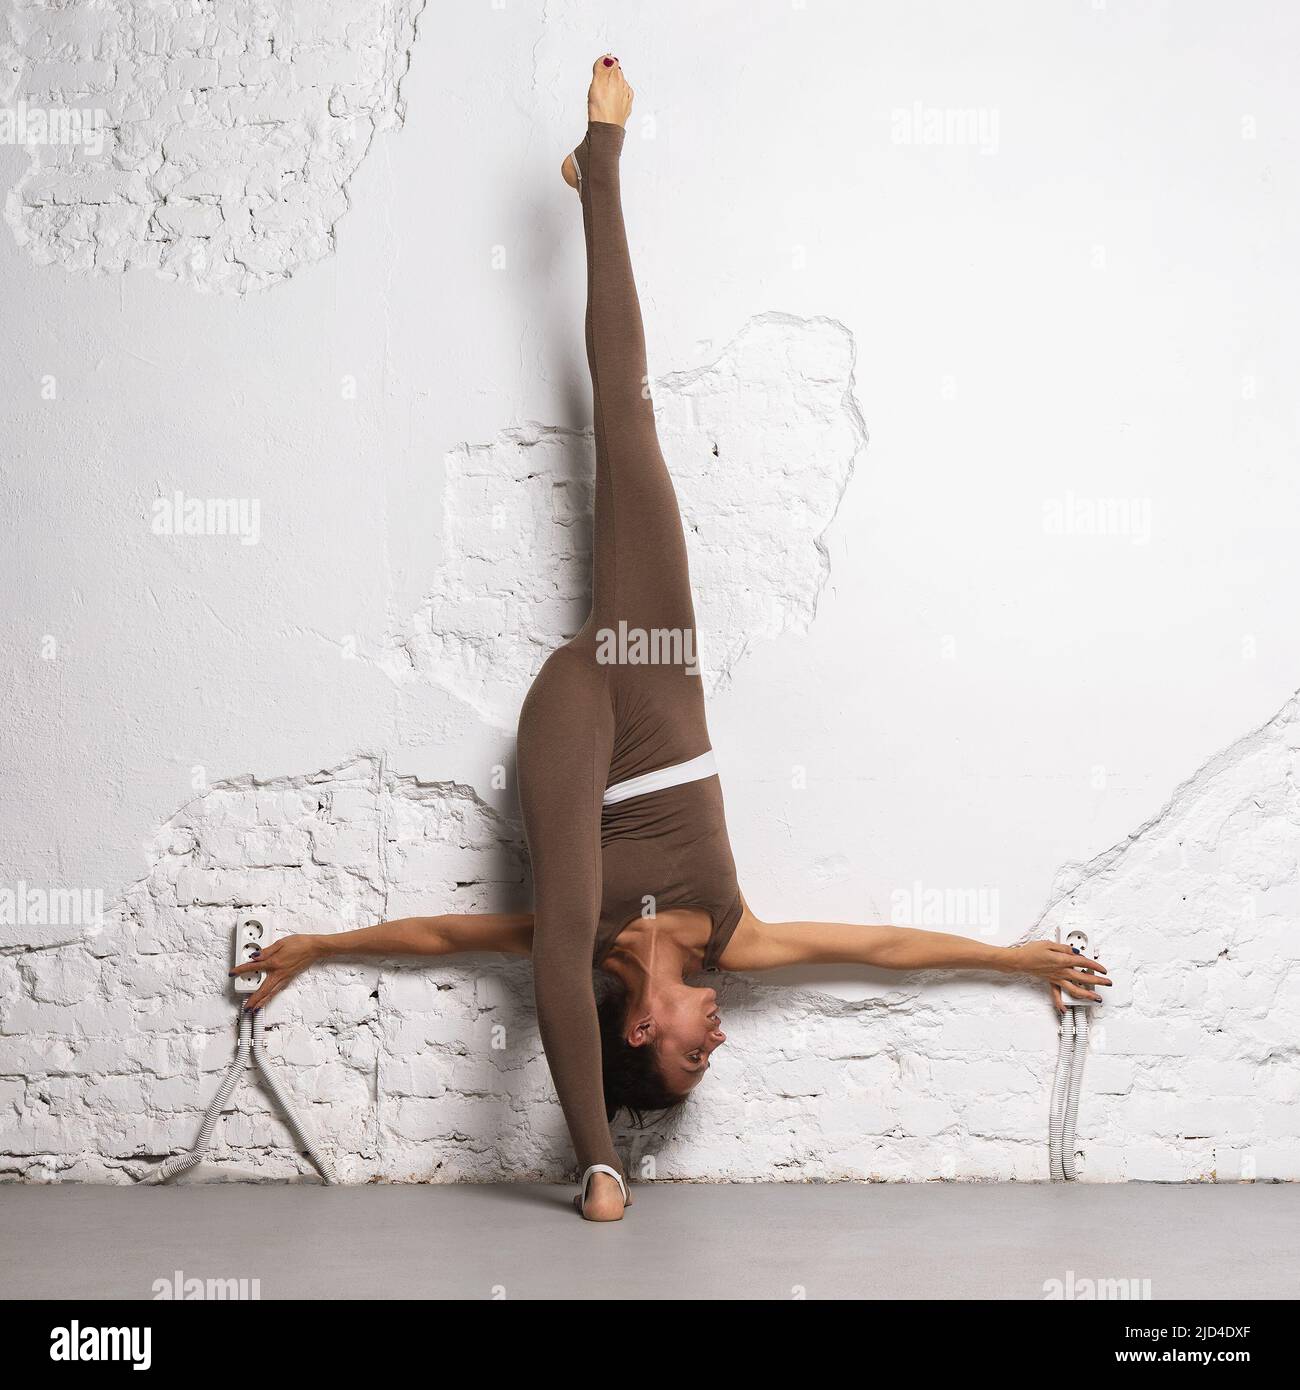 Una mujer se dedica a estirar los músculos de sus piernas, realiza una división longitudinal, inclinándola hacia atrás contra la pared, y entrena en la habitación Foto de stock